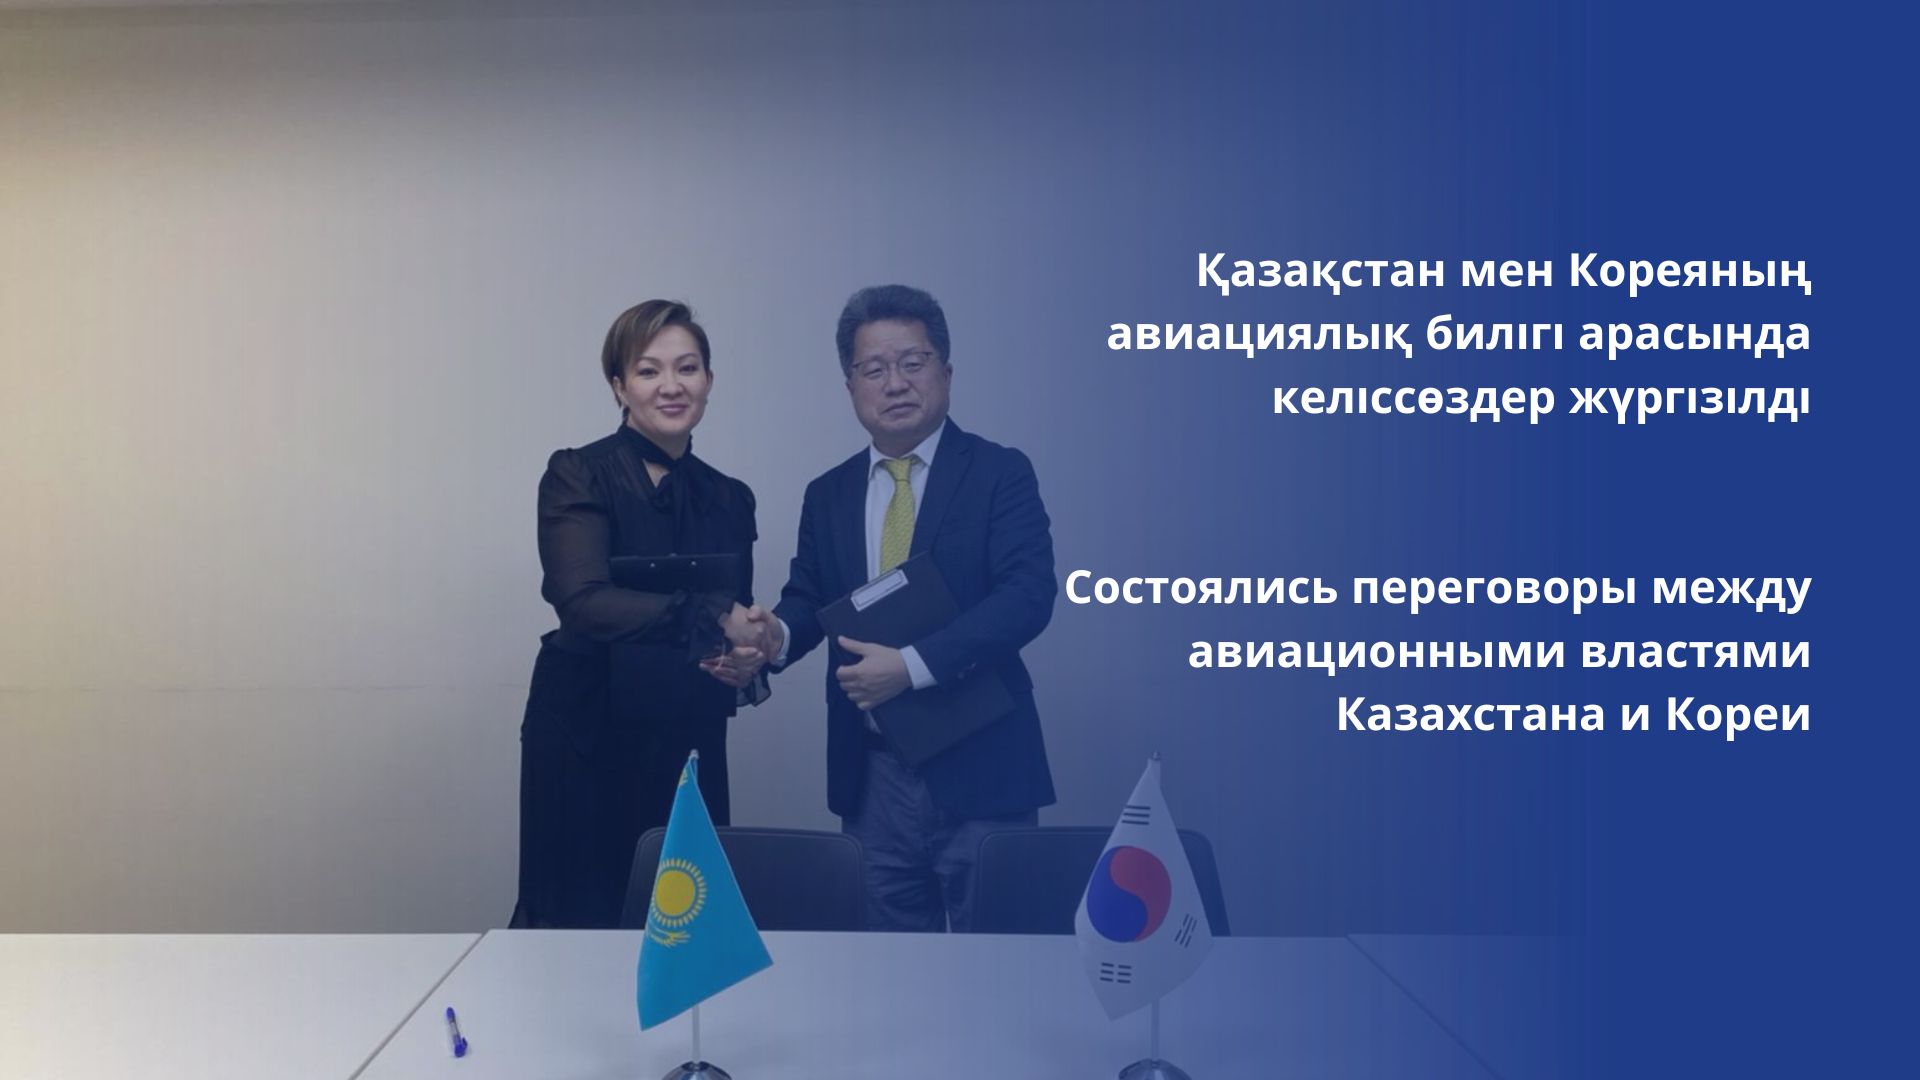 Состоялись переговоры между авиационными властями Казахстана и Кореи